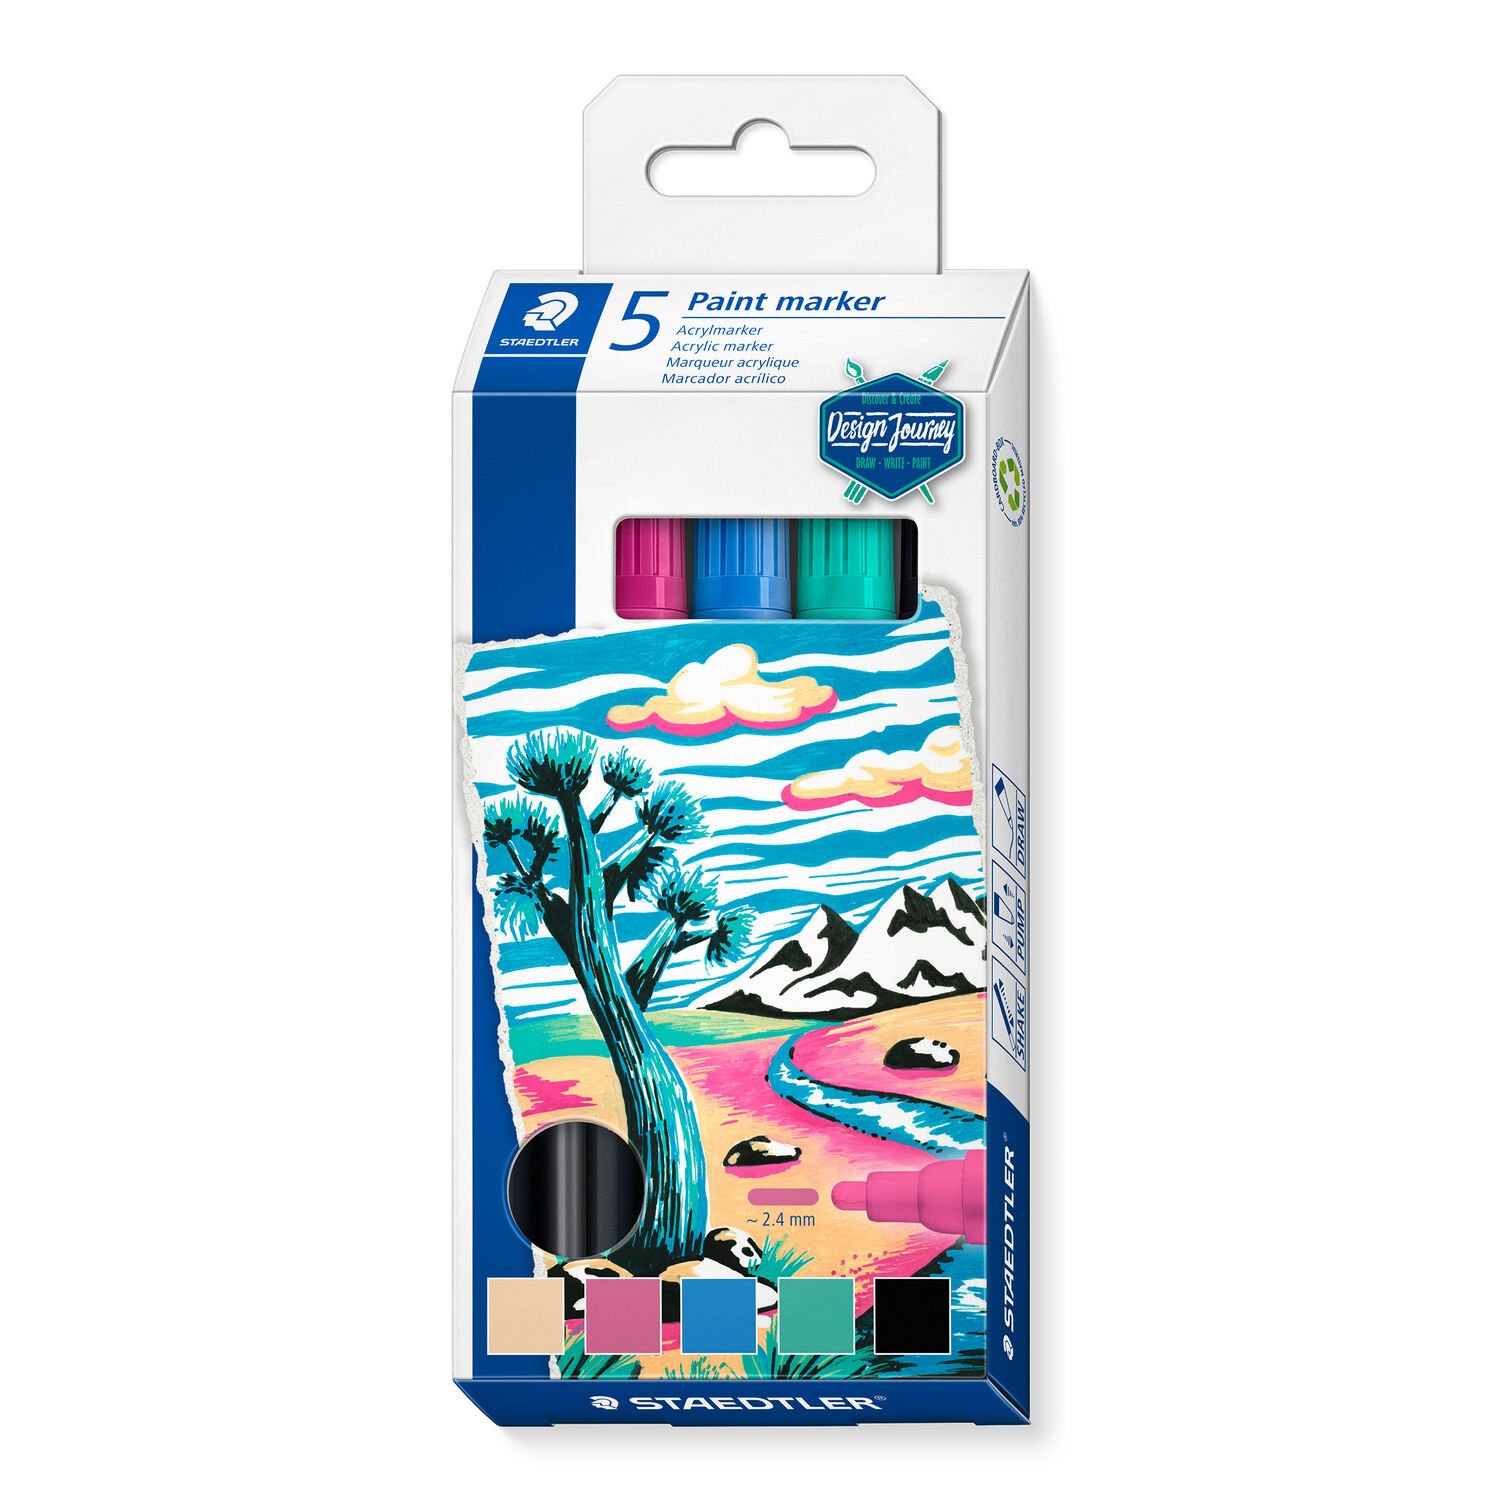 Kartonetui mit 5 Lumocolor paint marker in sortierten Farben